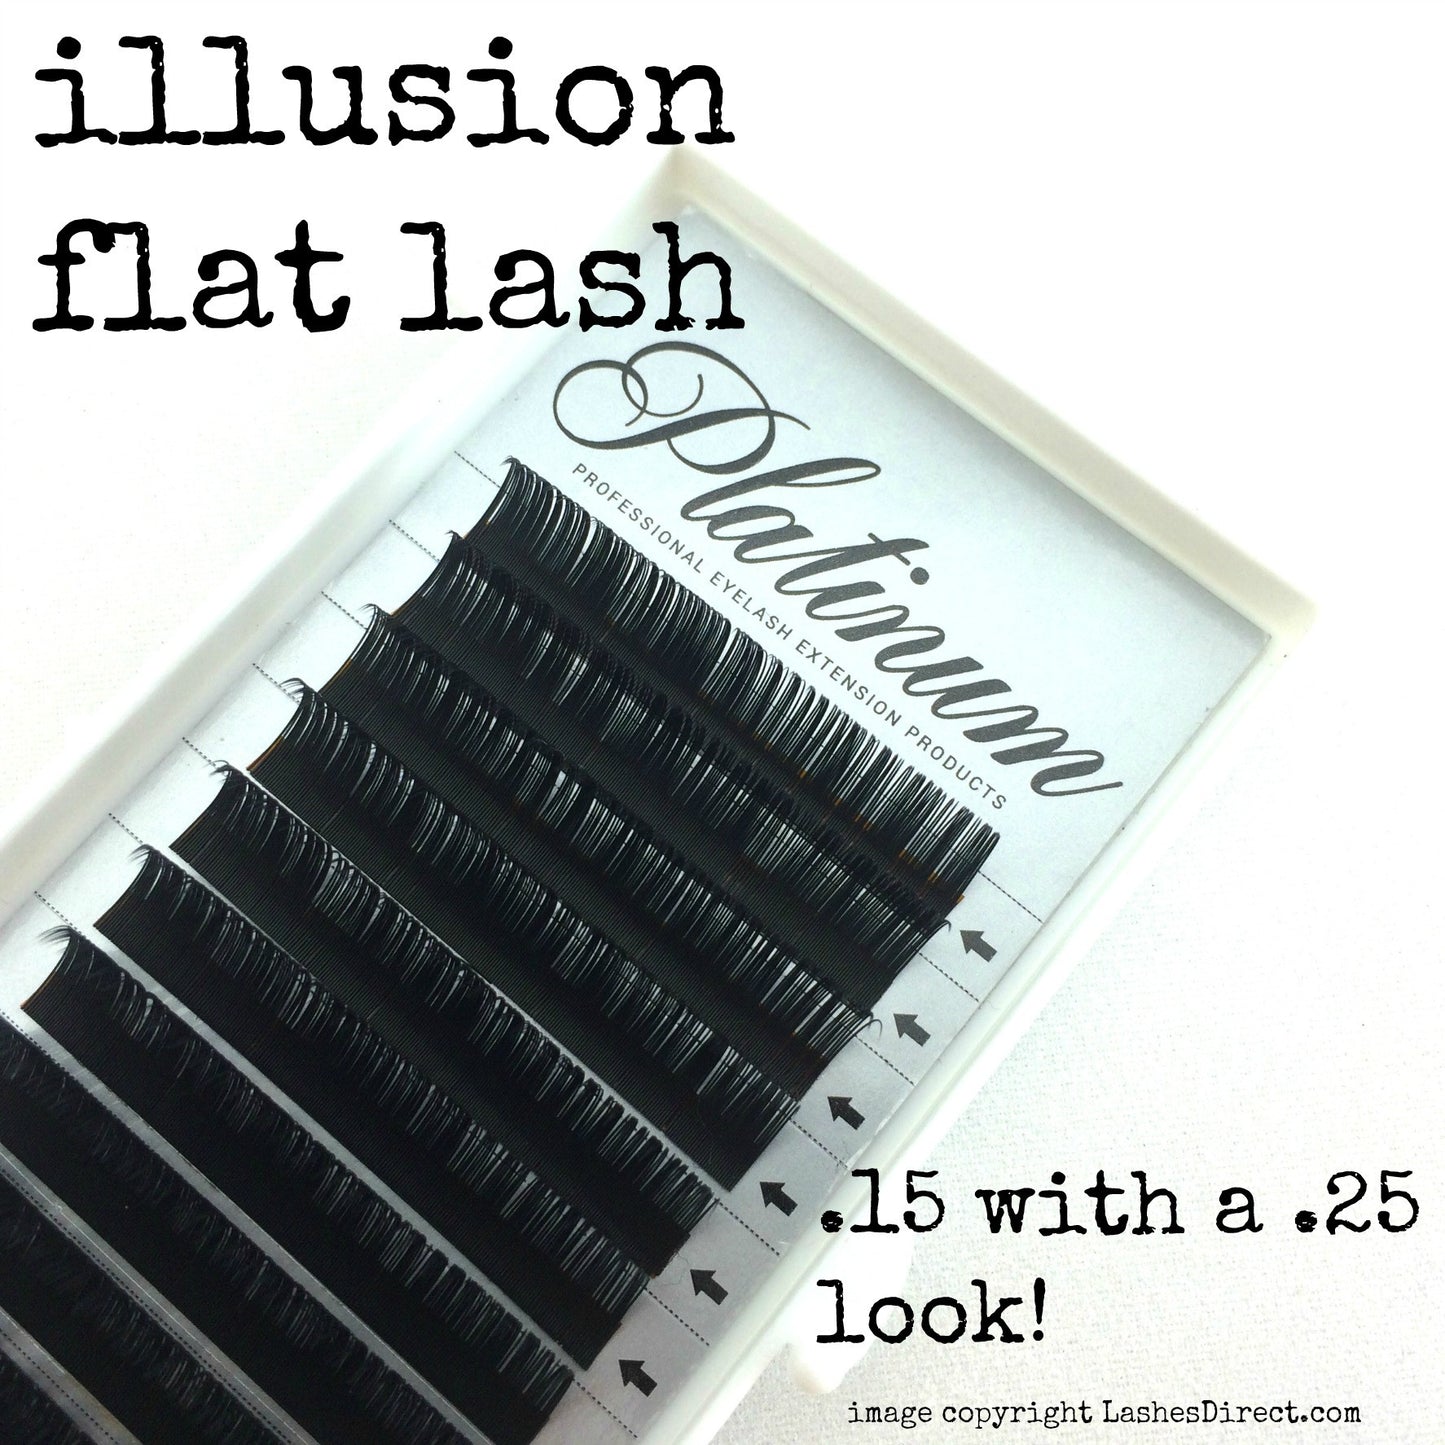 Flat Lash extensions